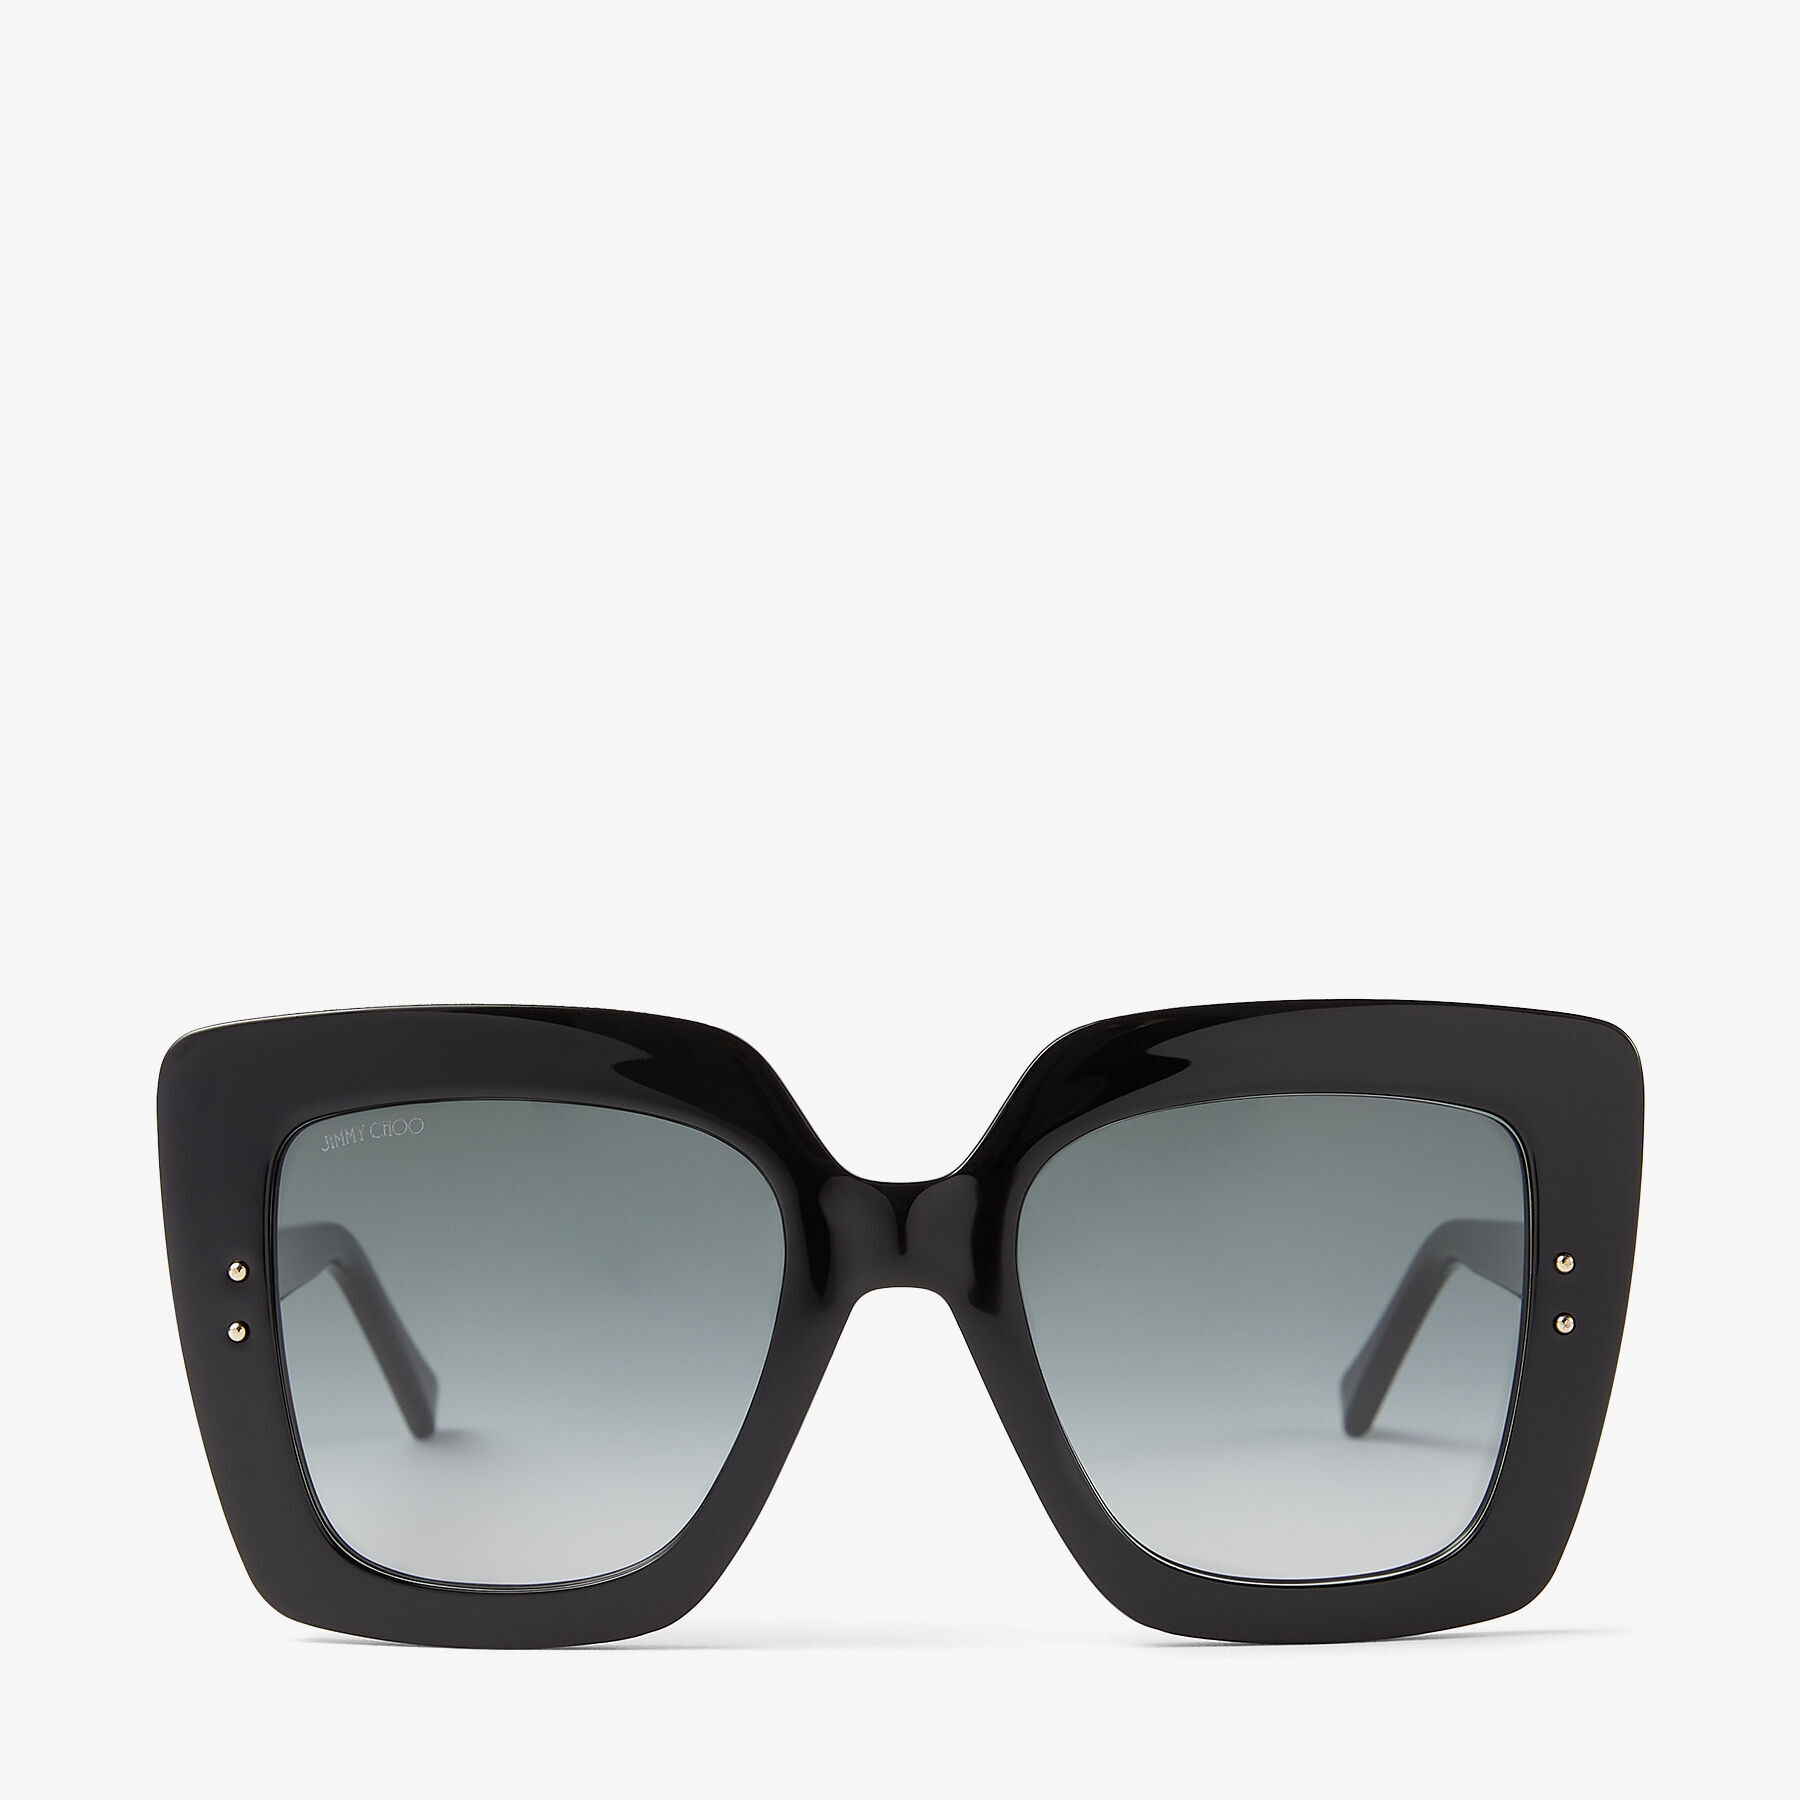 Brand New Authentic Jimmy Choo Sunglasses TAVI/S 01QHA Gold 60mm Frame TAVI  | eBay